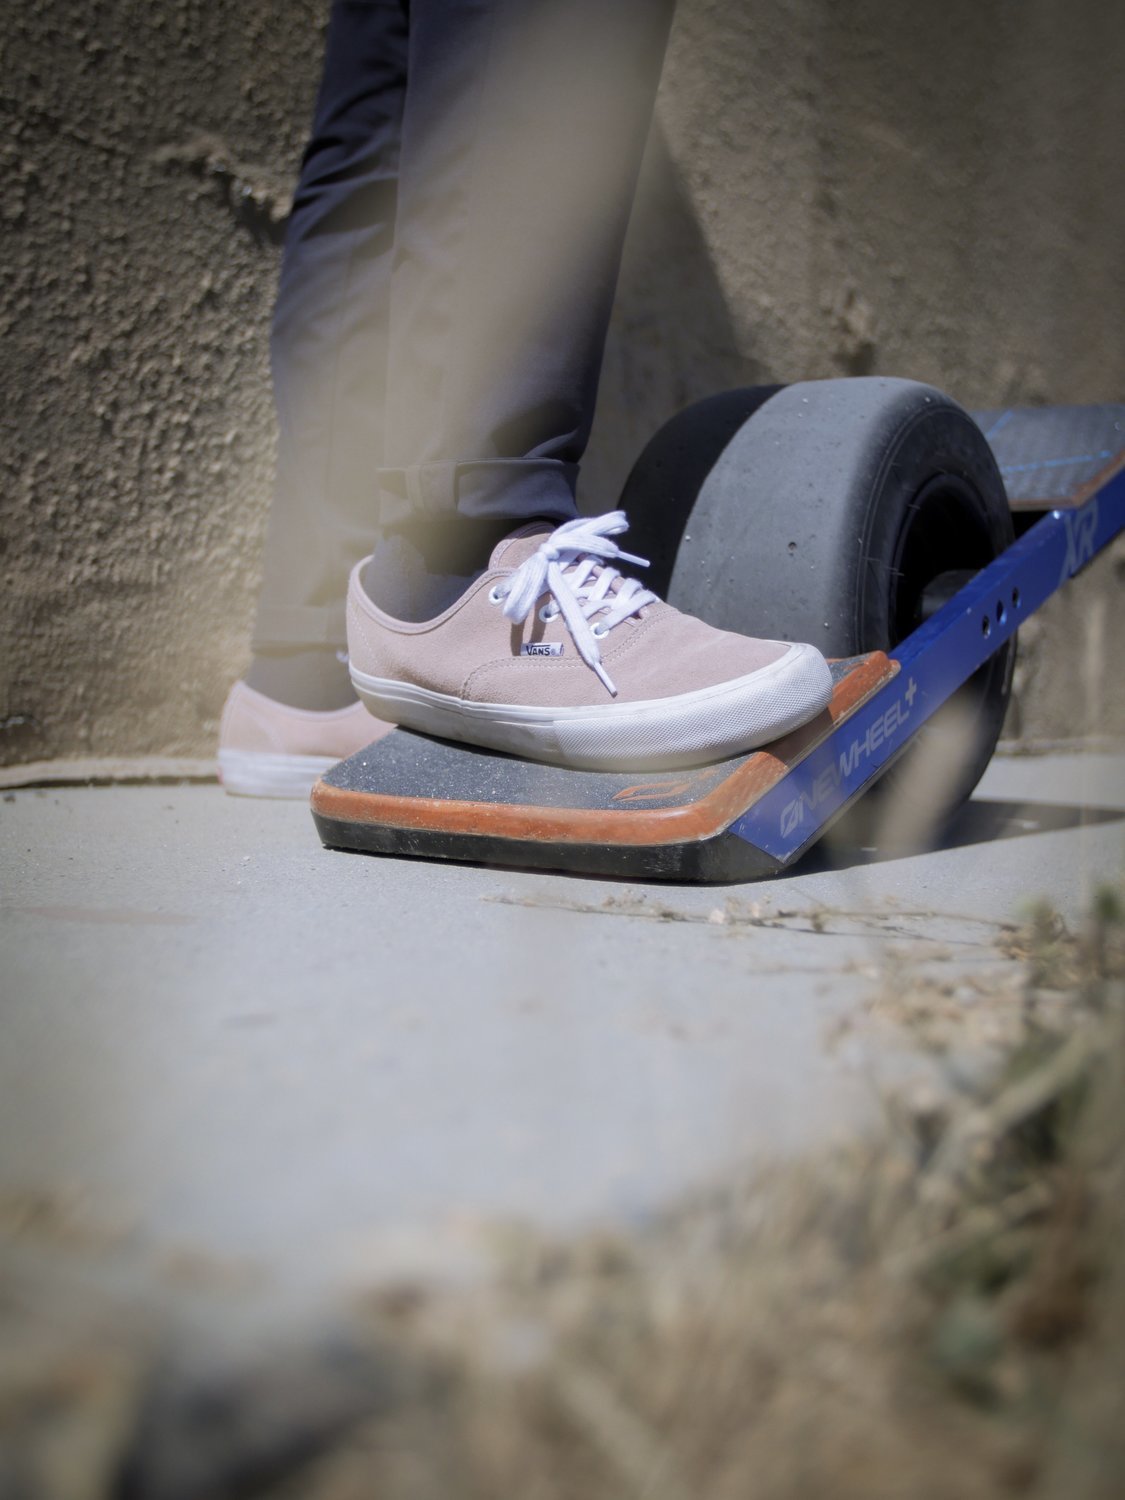 Onewheel XR Surestance Pro Back footboard